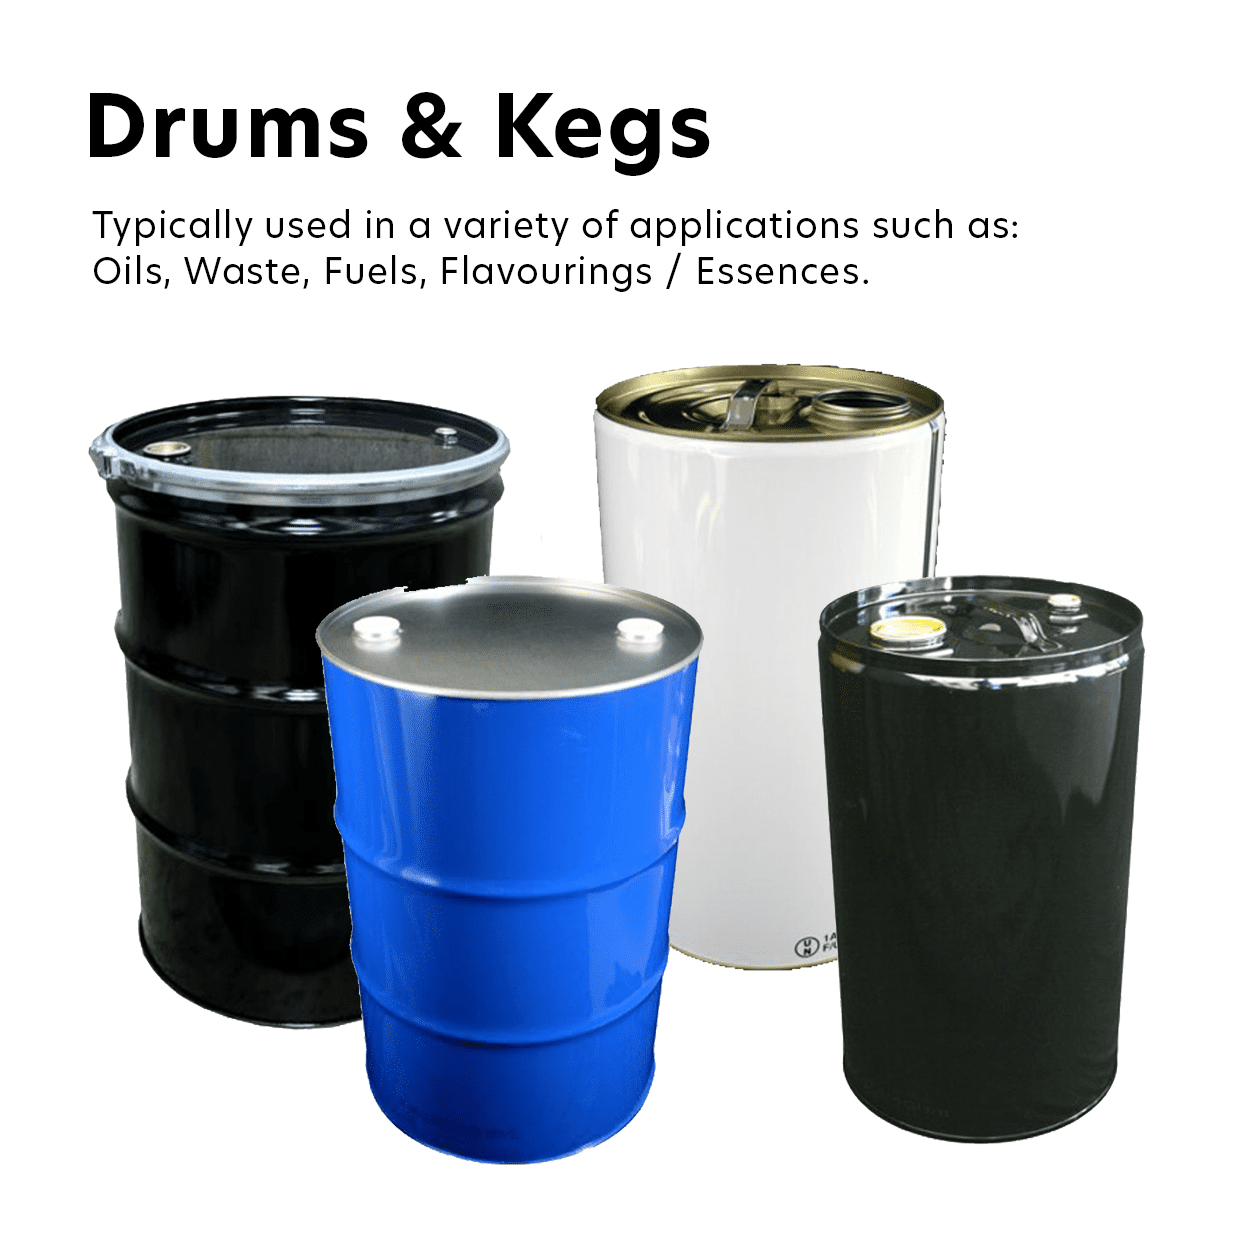 Drums & Kegs